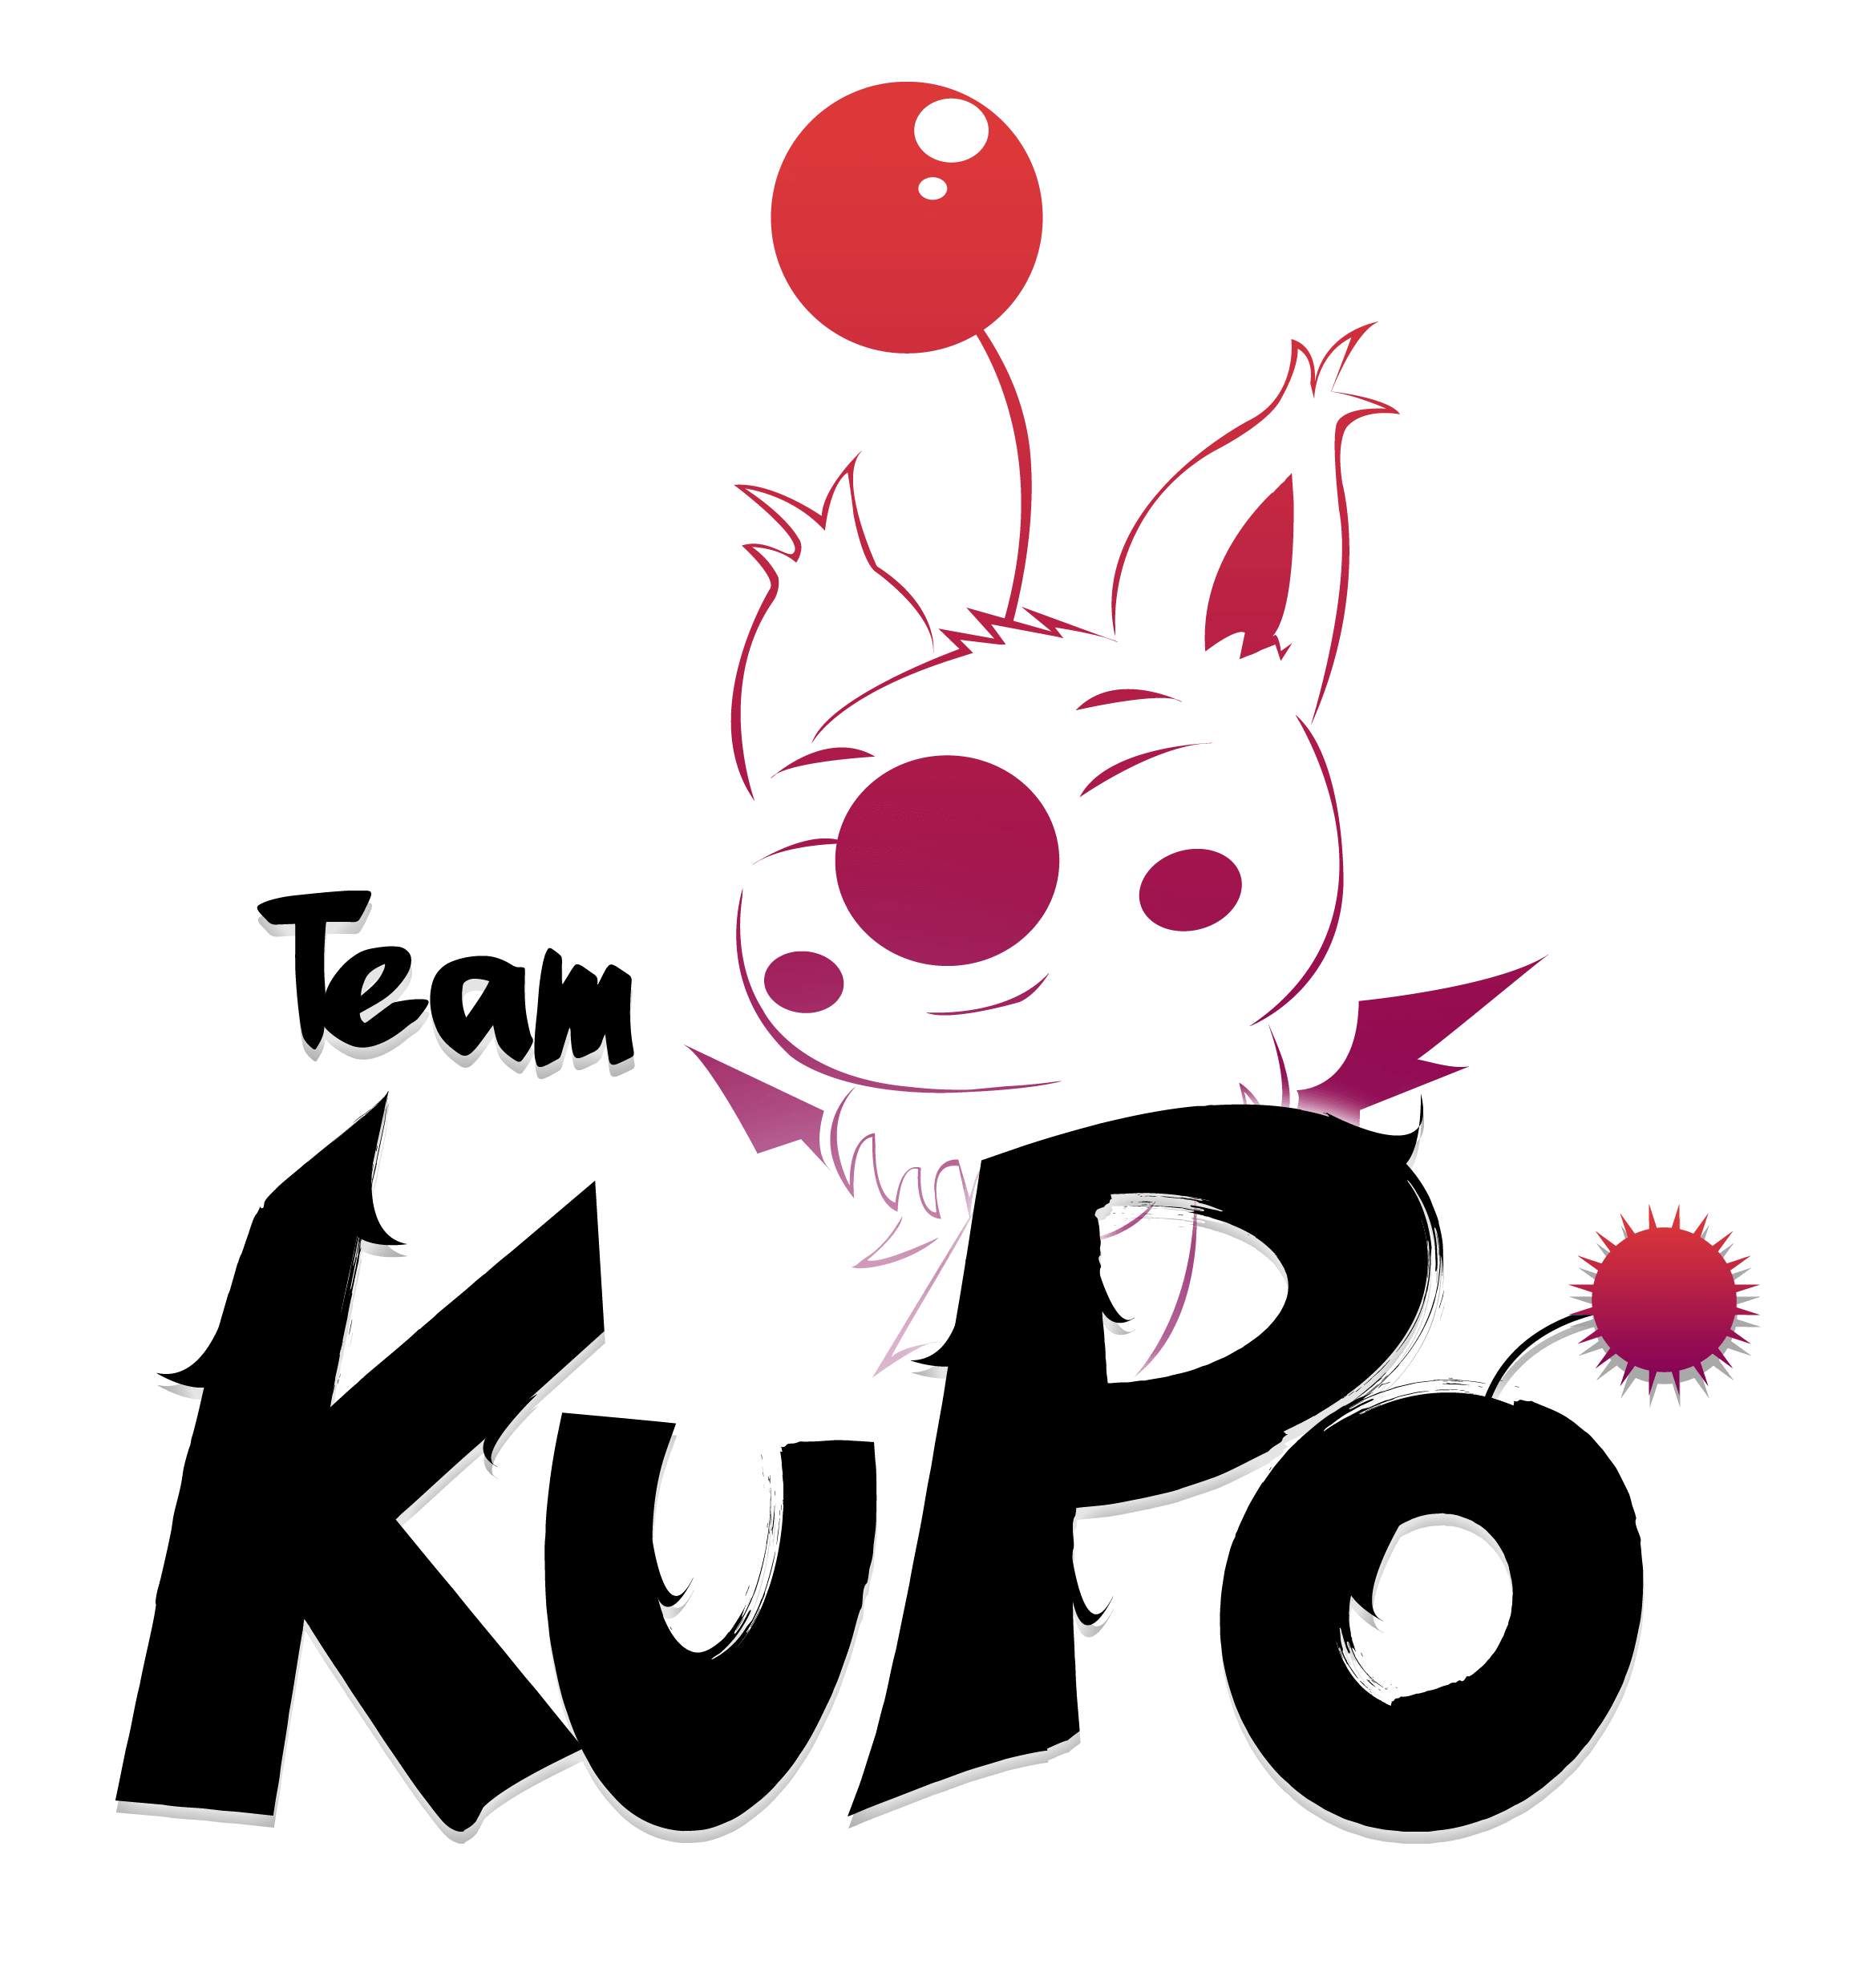 Team FR - La Team Kupo